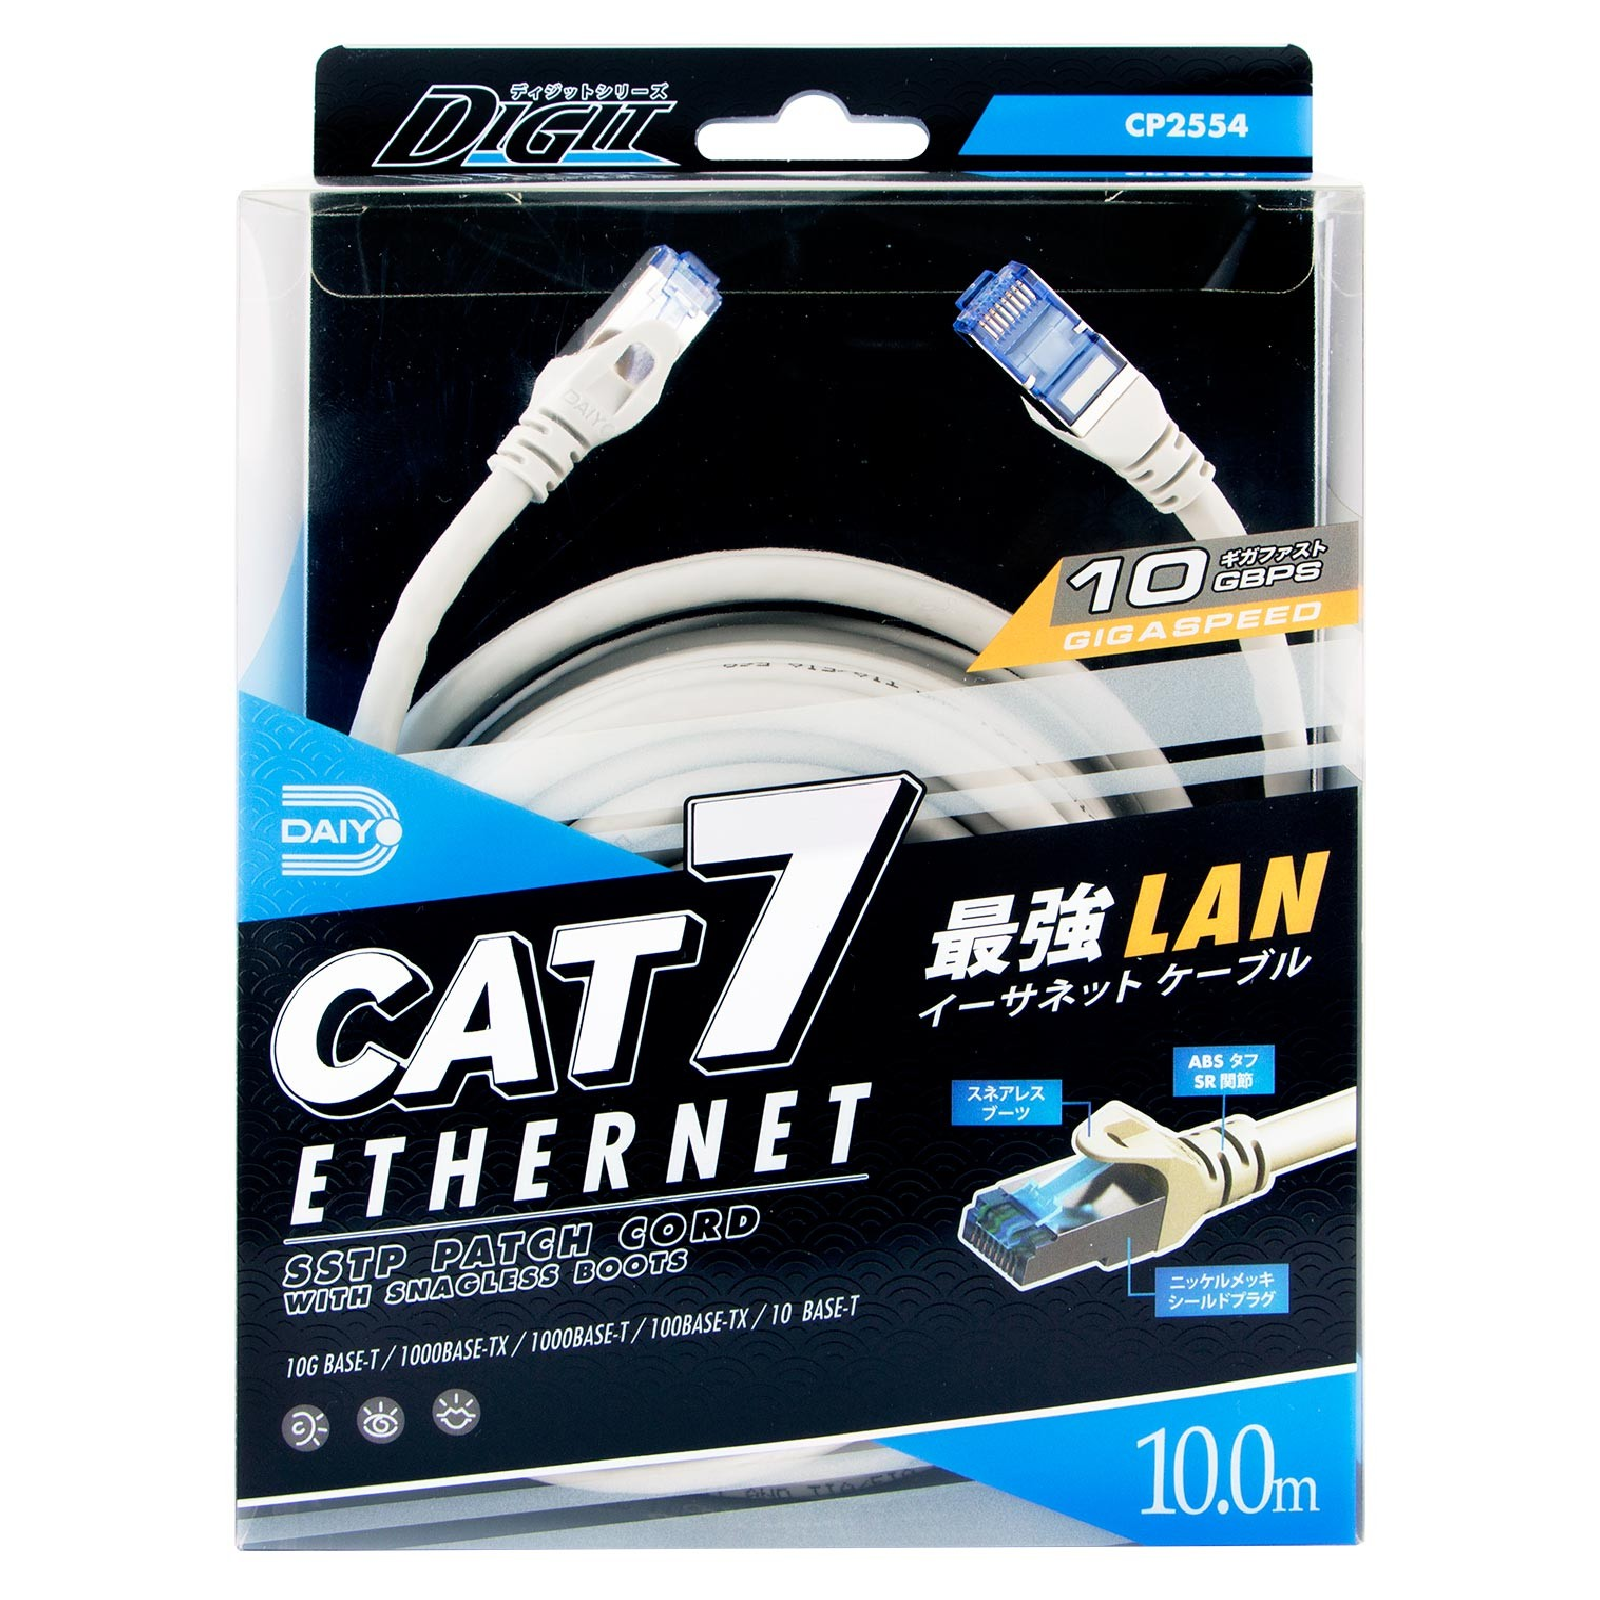 Daiyo CAT 7 Ethernet LAN Cable (Fast Speed) 10M